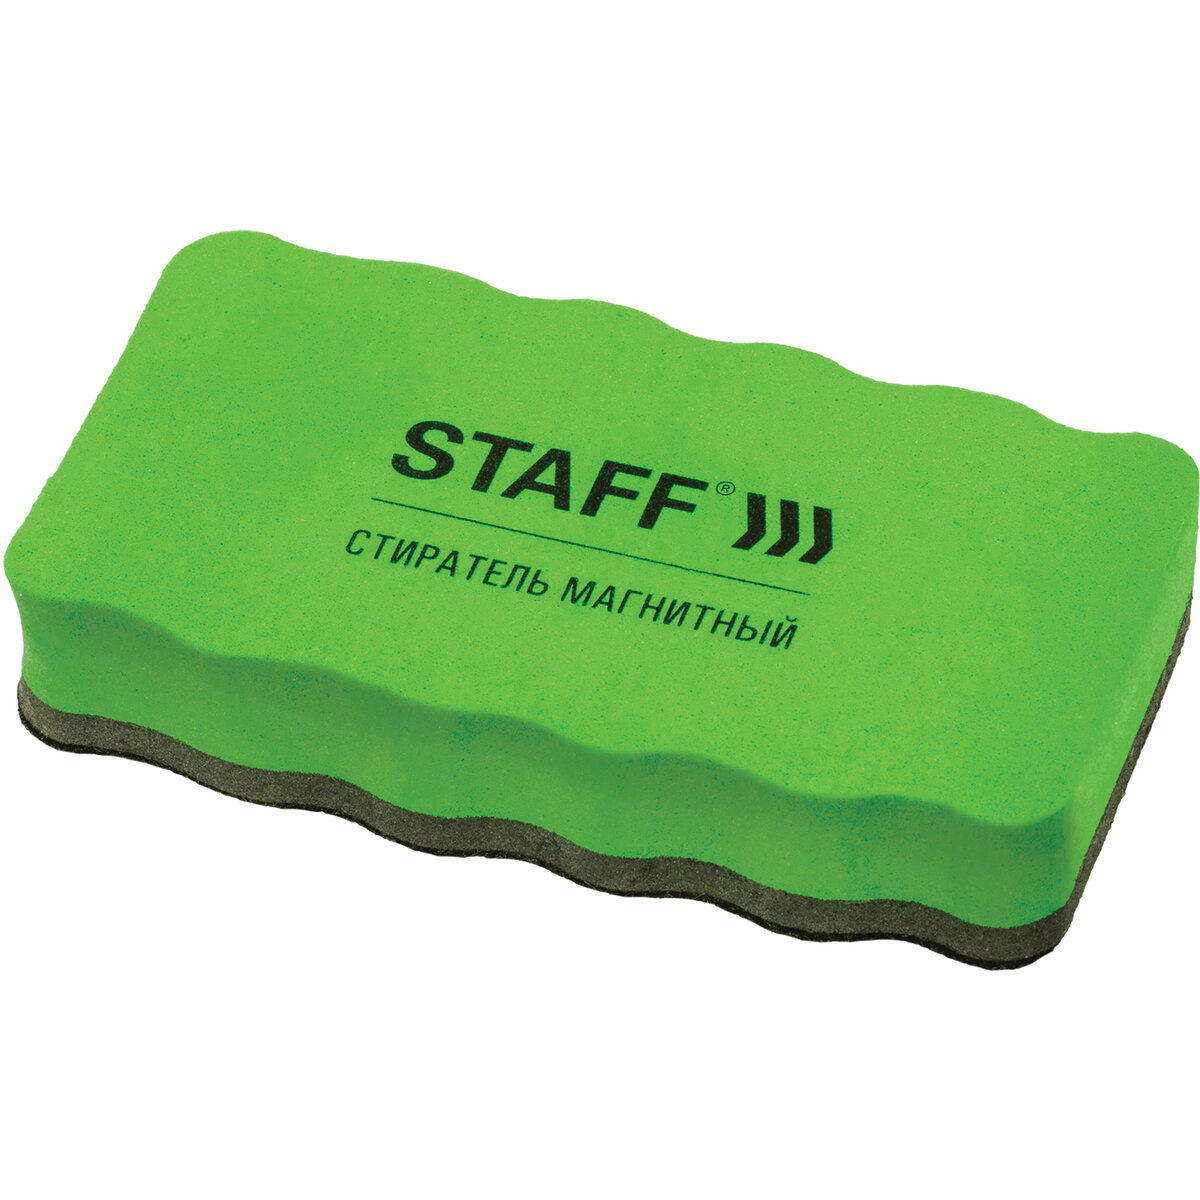 Стиратель маркера Staff для магнитно-маркерной доски 10 штук - фото 1